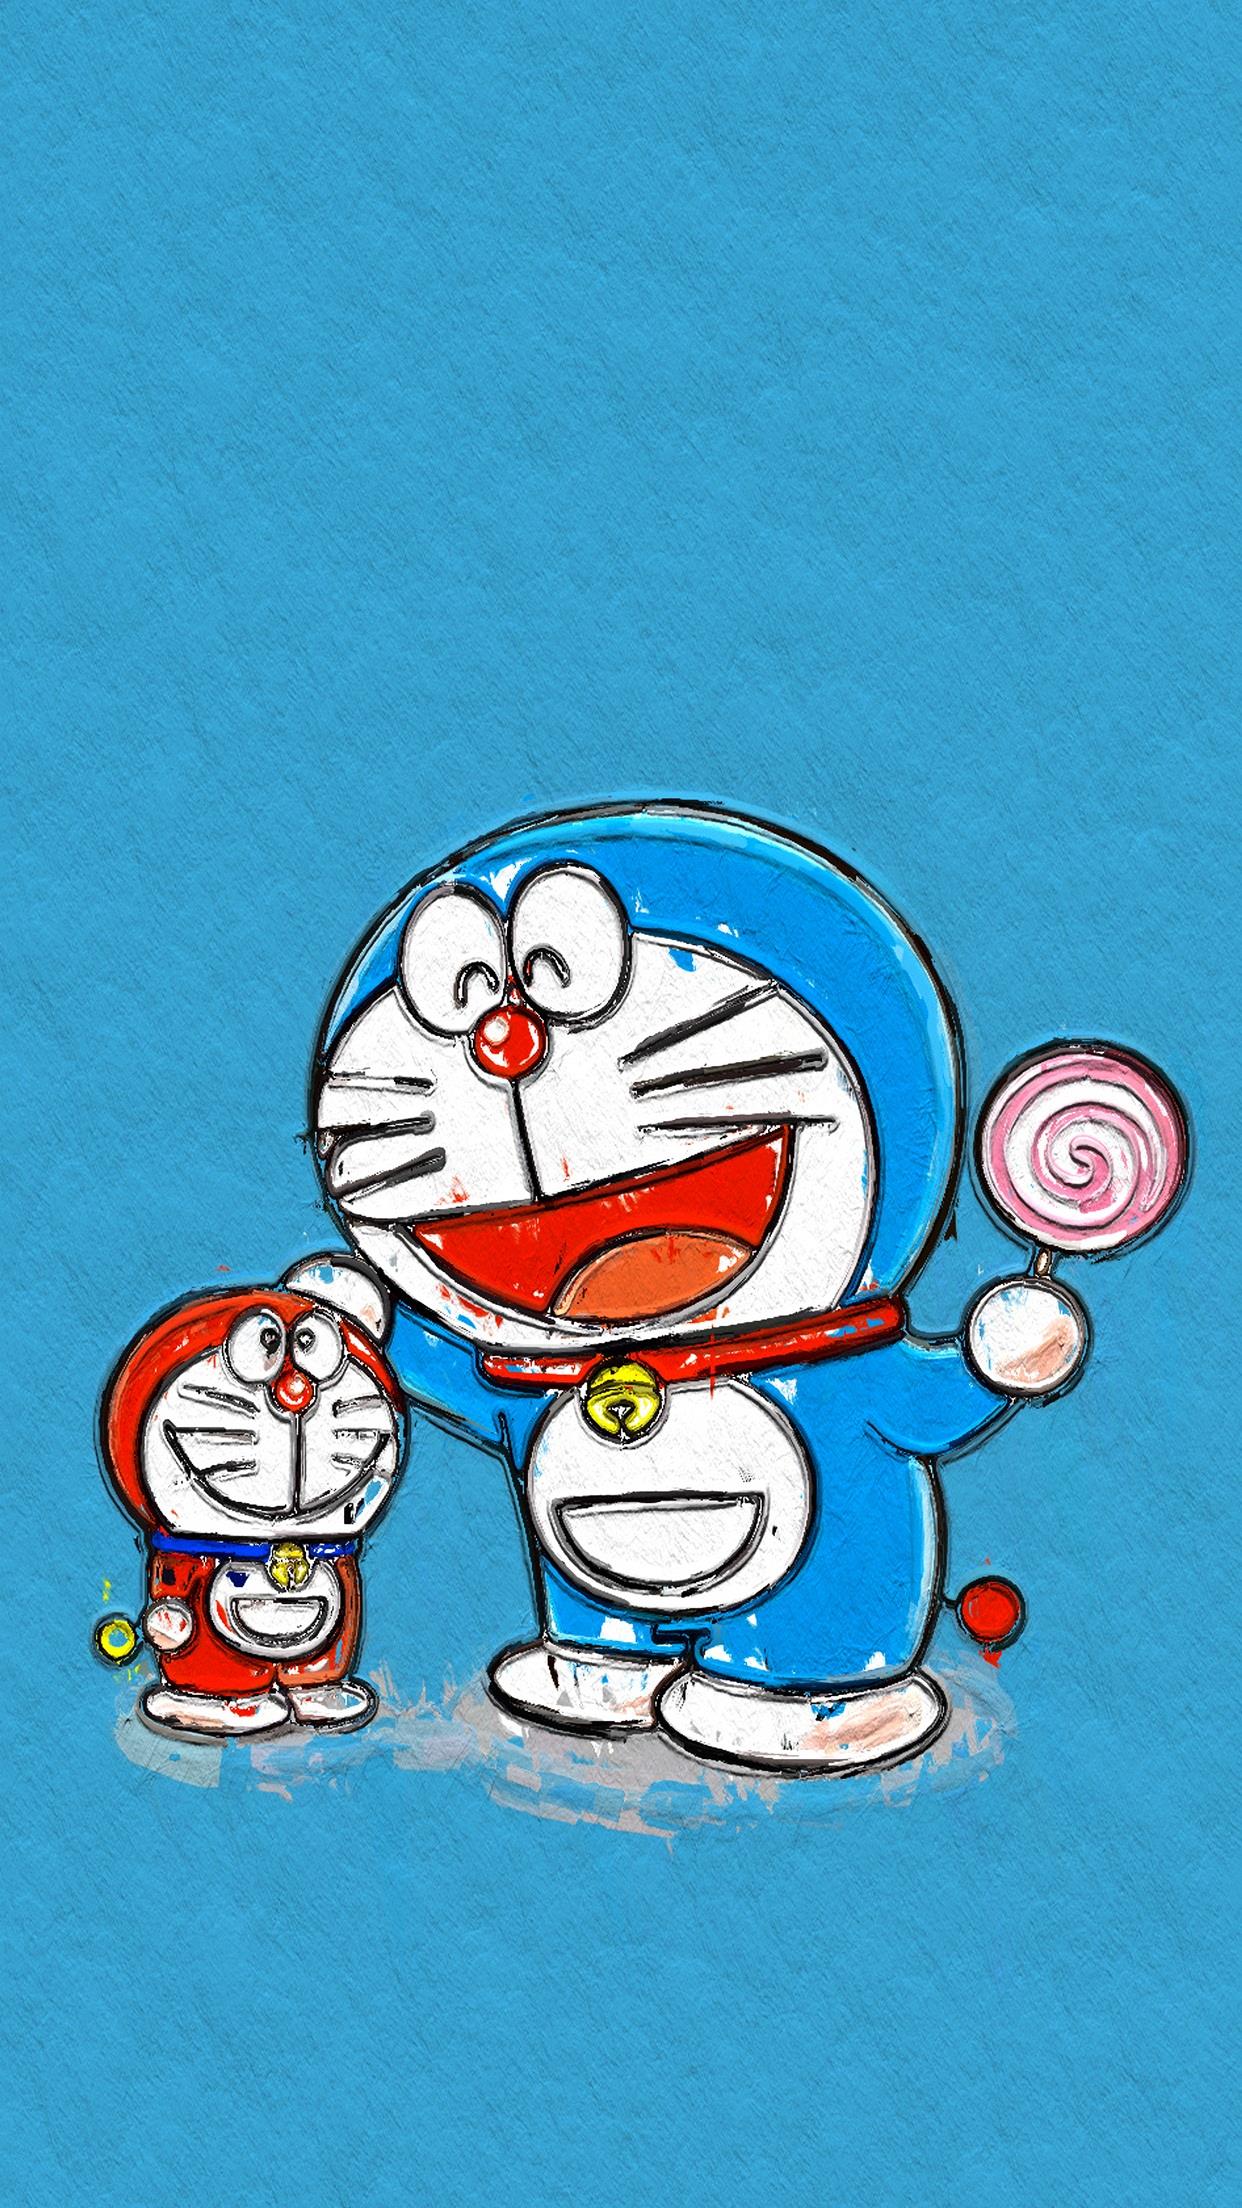 哆啦a梦手机壁纸 (=^¨^=) #机器猫#蓝胖子#手绘卡通壁纸